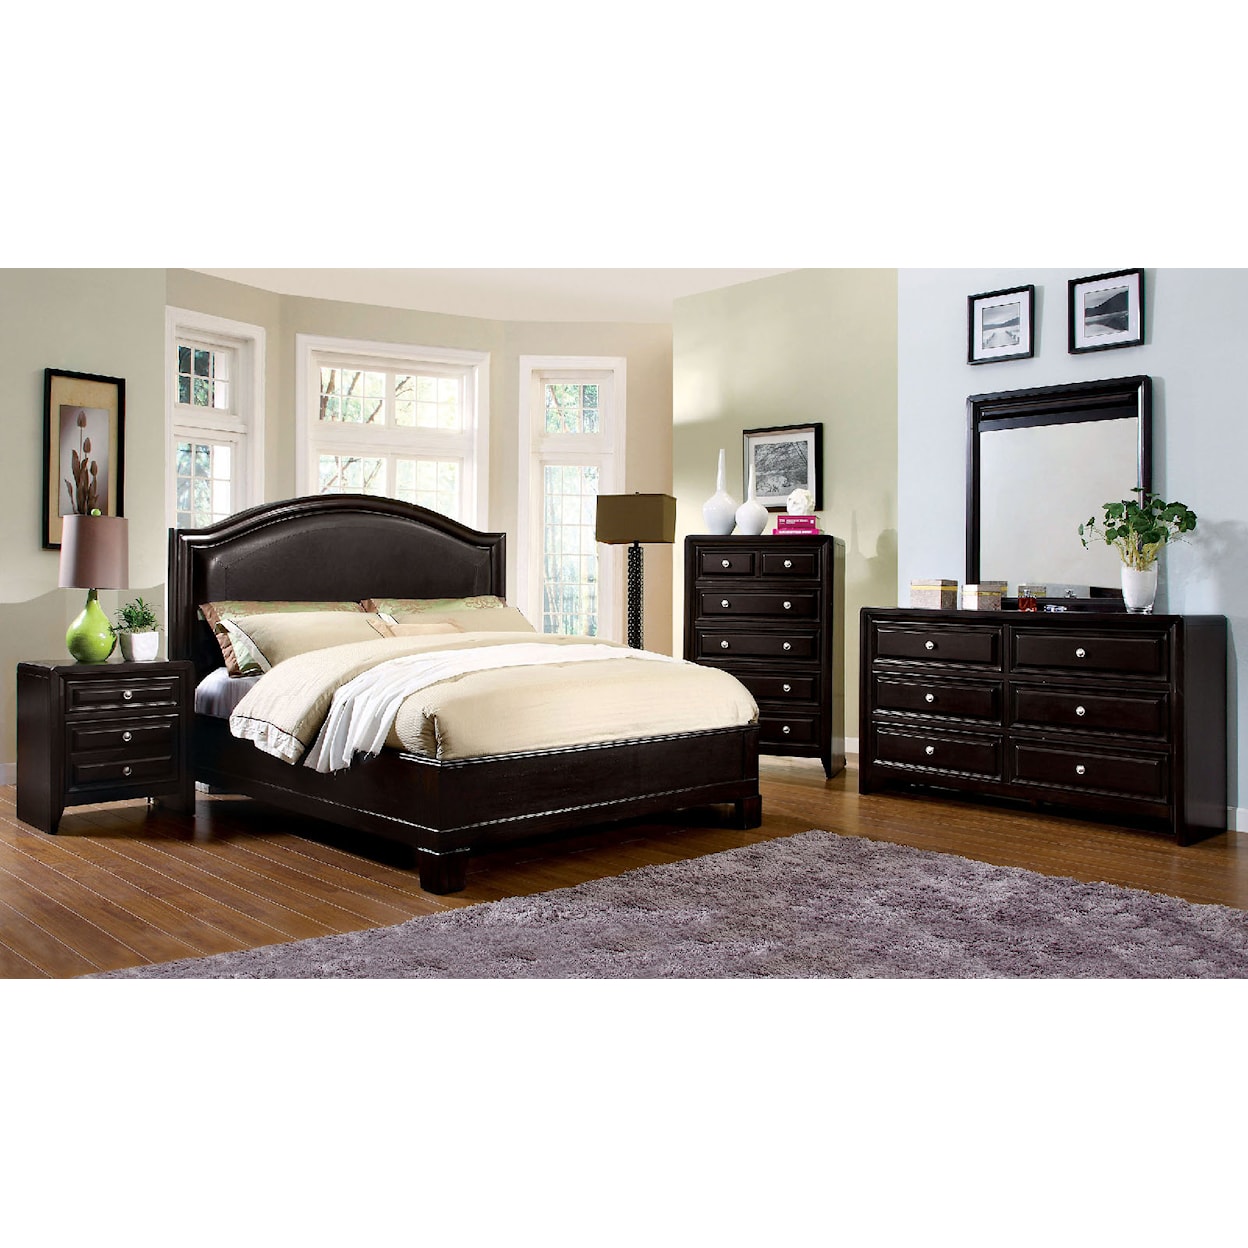 Furniture of America Winsor 5-Piece Queen Bedroom Set 